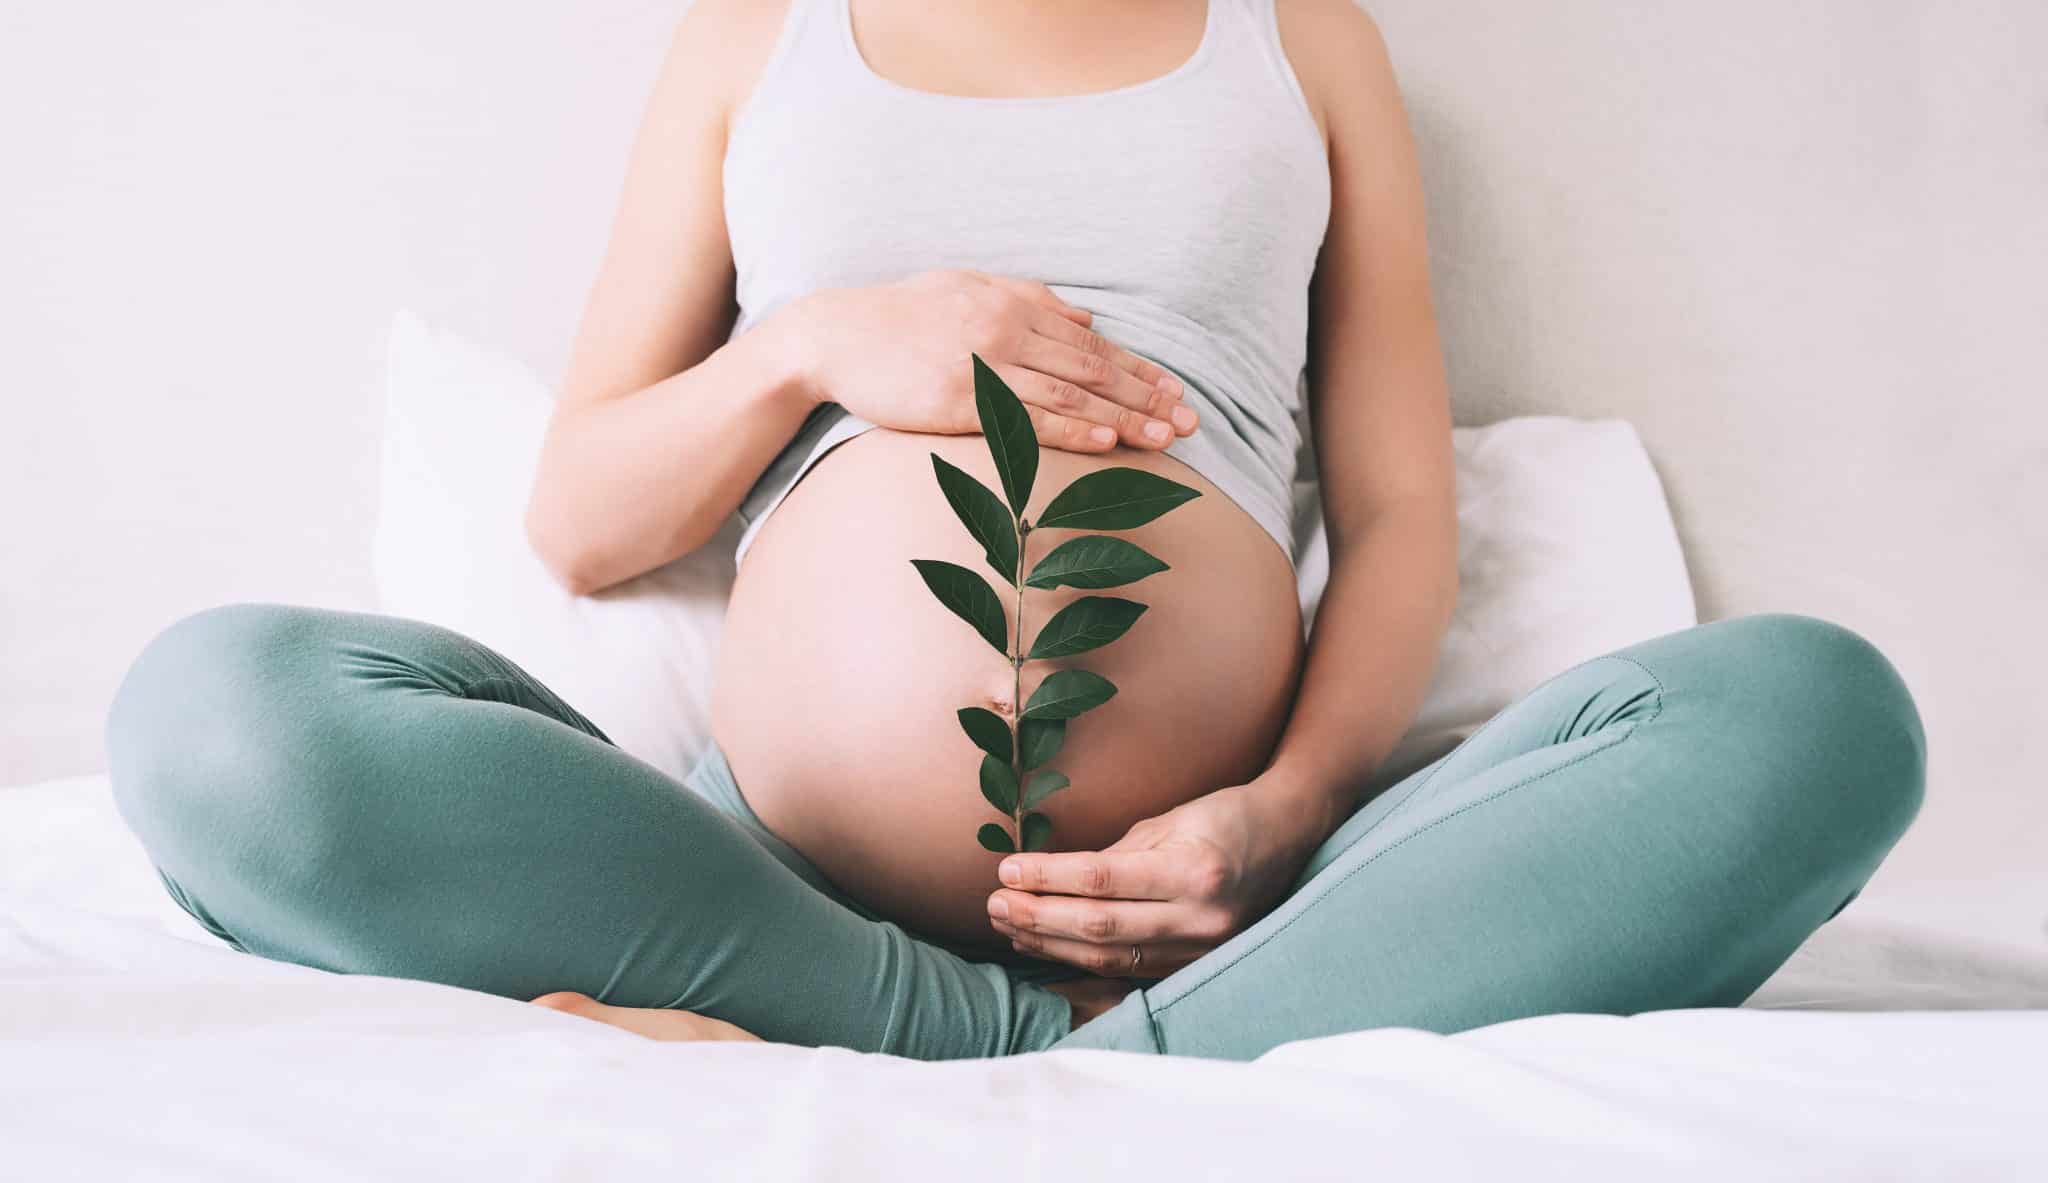 prenatal visits